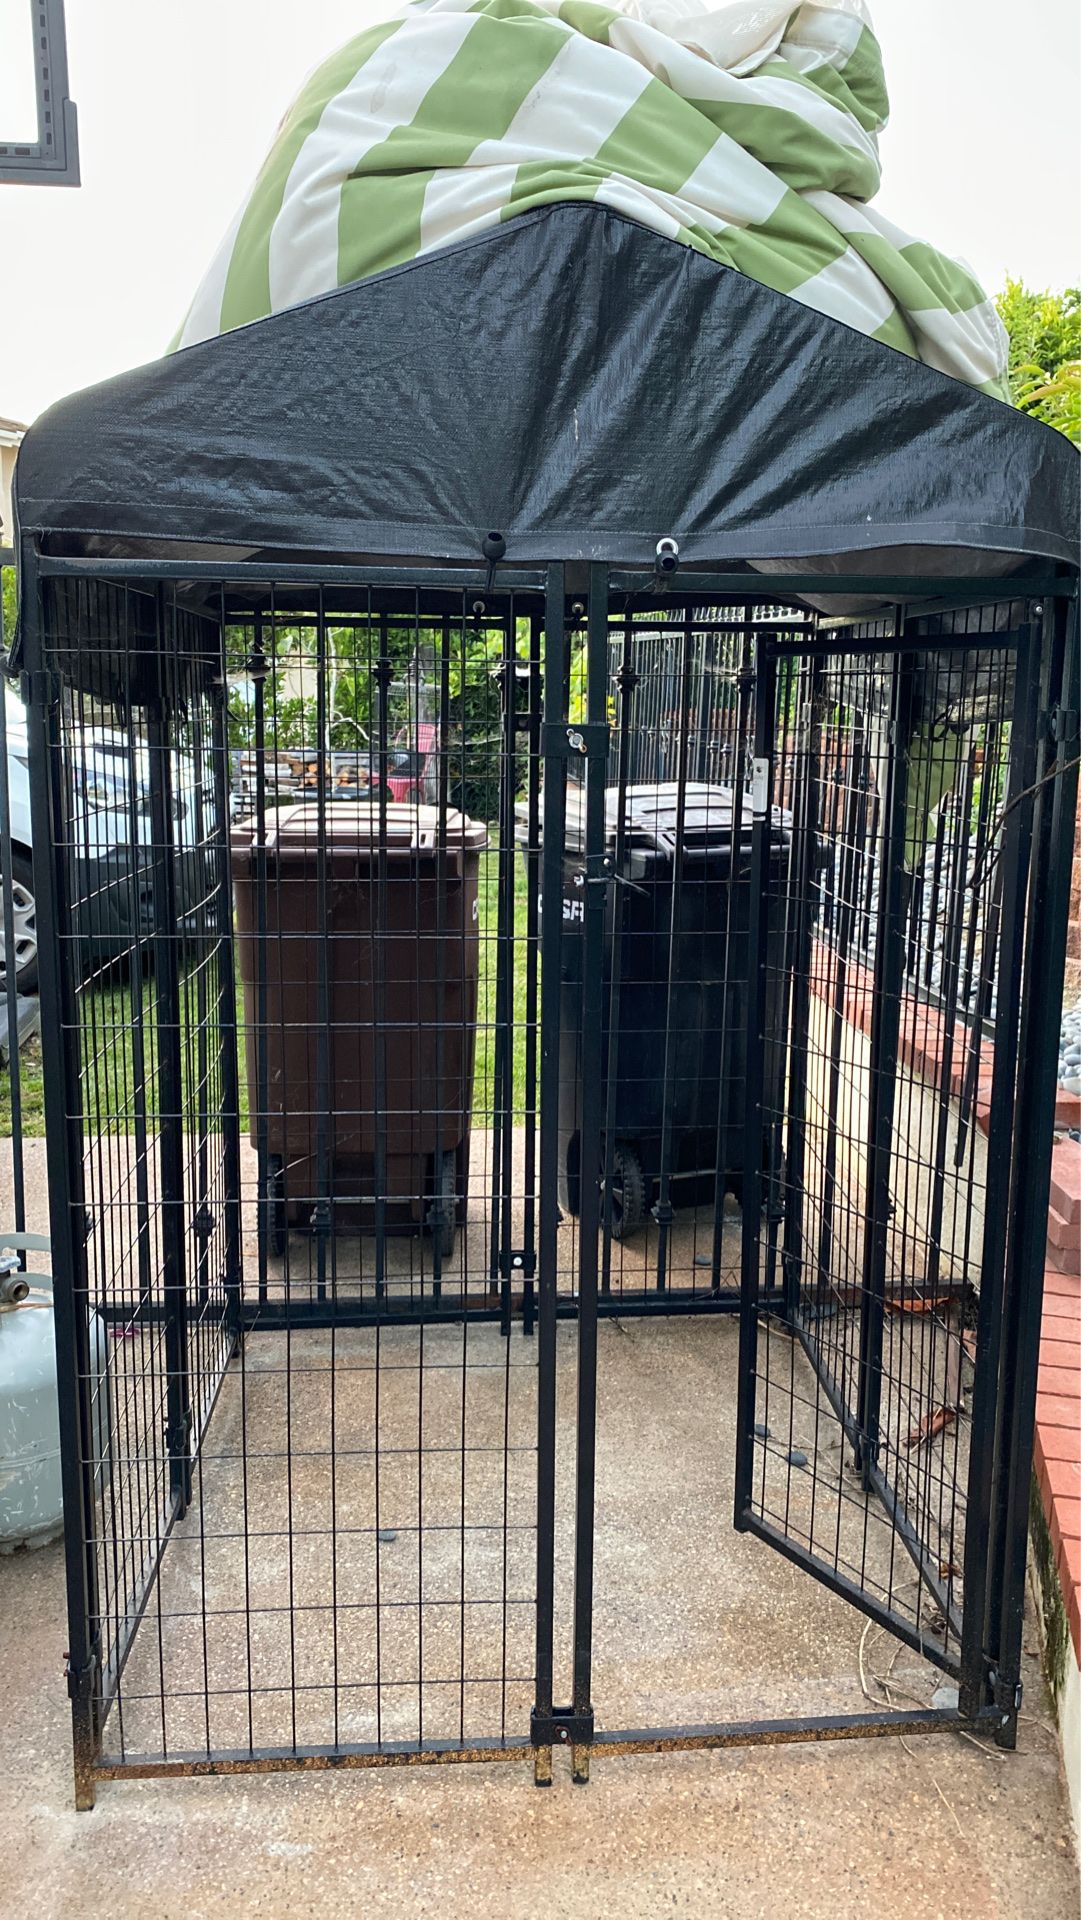 Large dog kennel